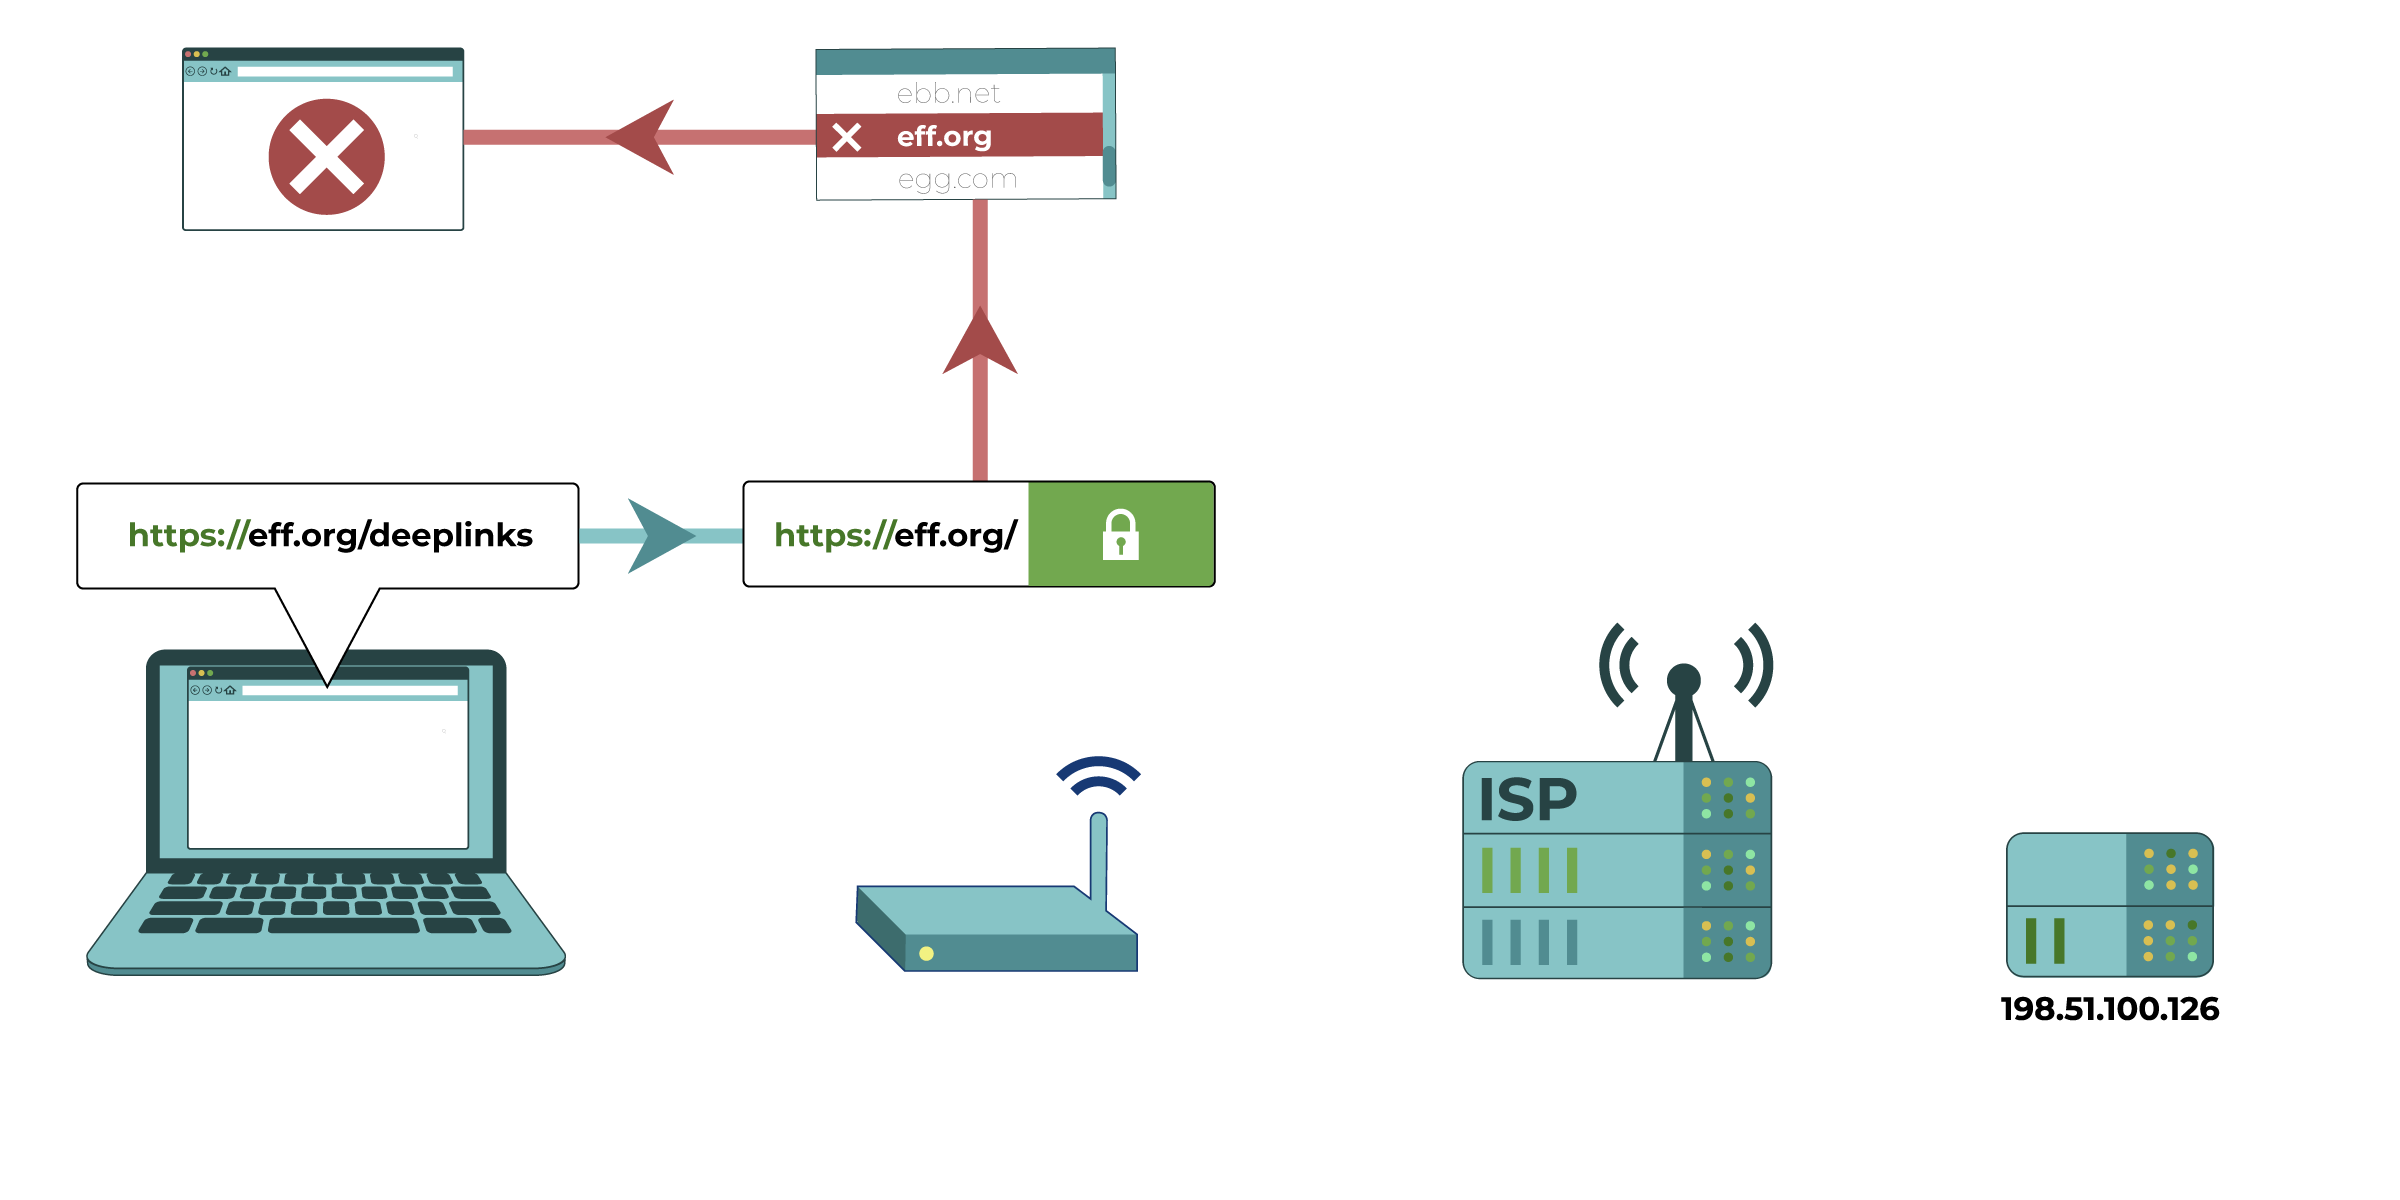 En este diagrama, una computadora intenta acceder a eff.org/deeplinks. El administrador de la red (representado por un enrutador) puede ver el dominio (eff.org) pero no la dirección completa del sitio web después de la barra. El administrador de la red puede decidir a qué dominios bloquear el acceso.